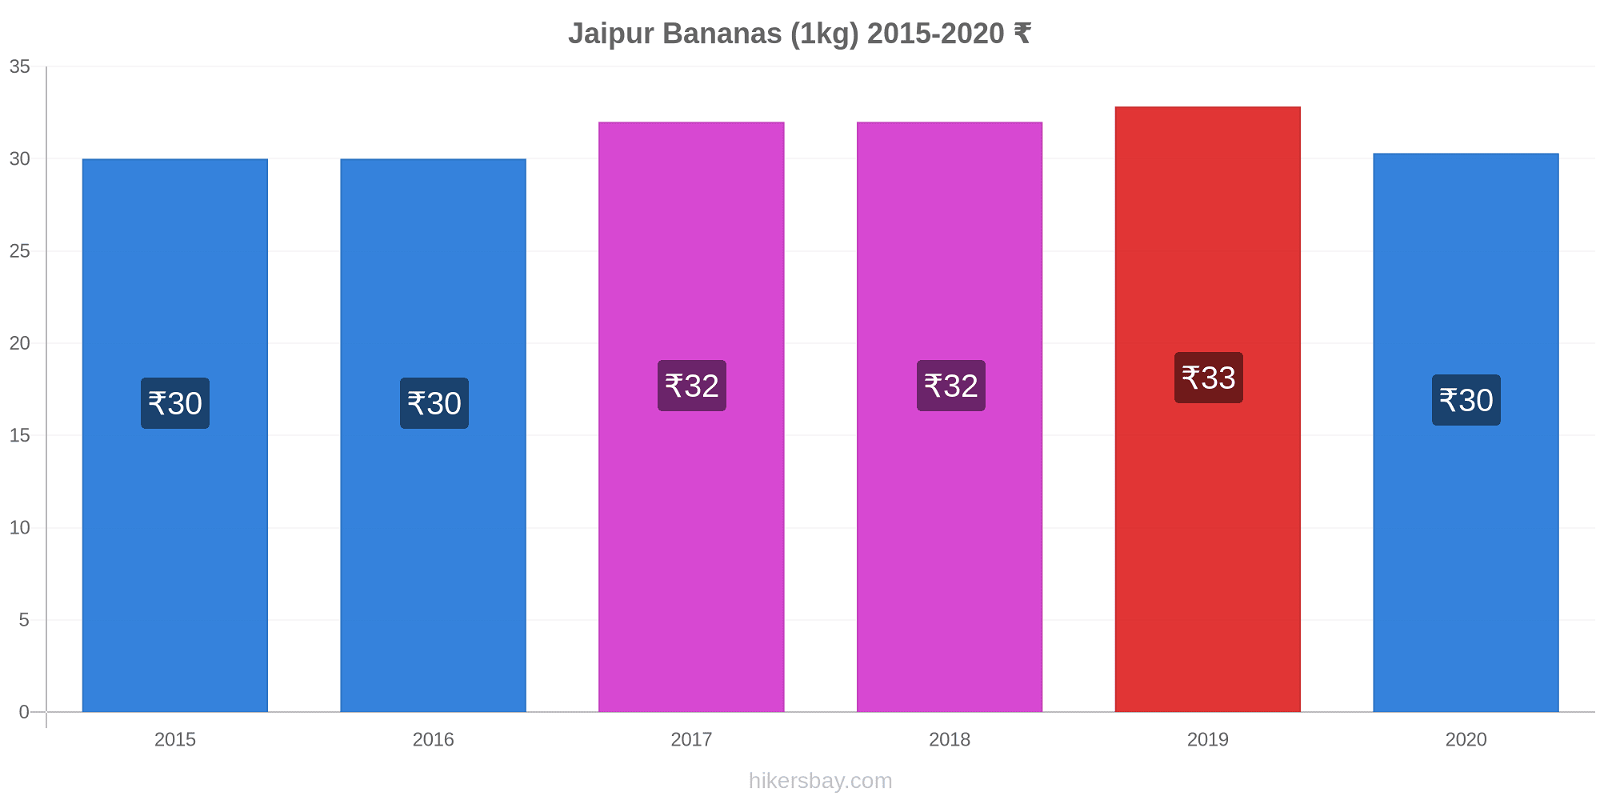 Jaipur variação de preço Banana (1kg) hikersbay.com